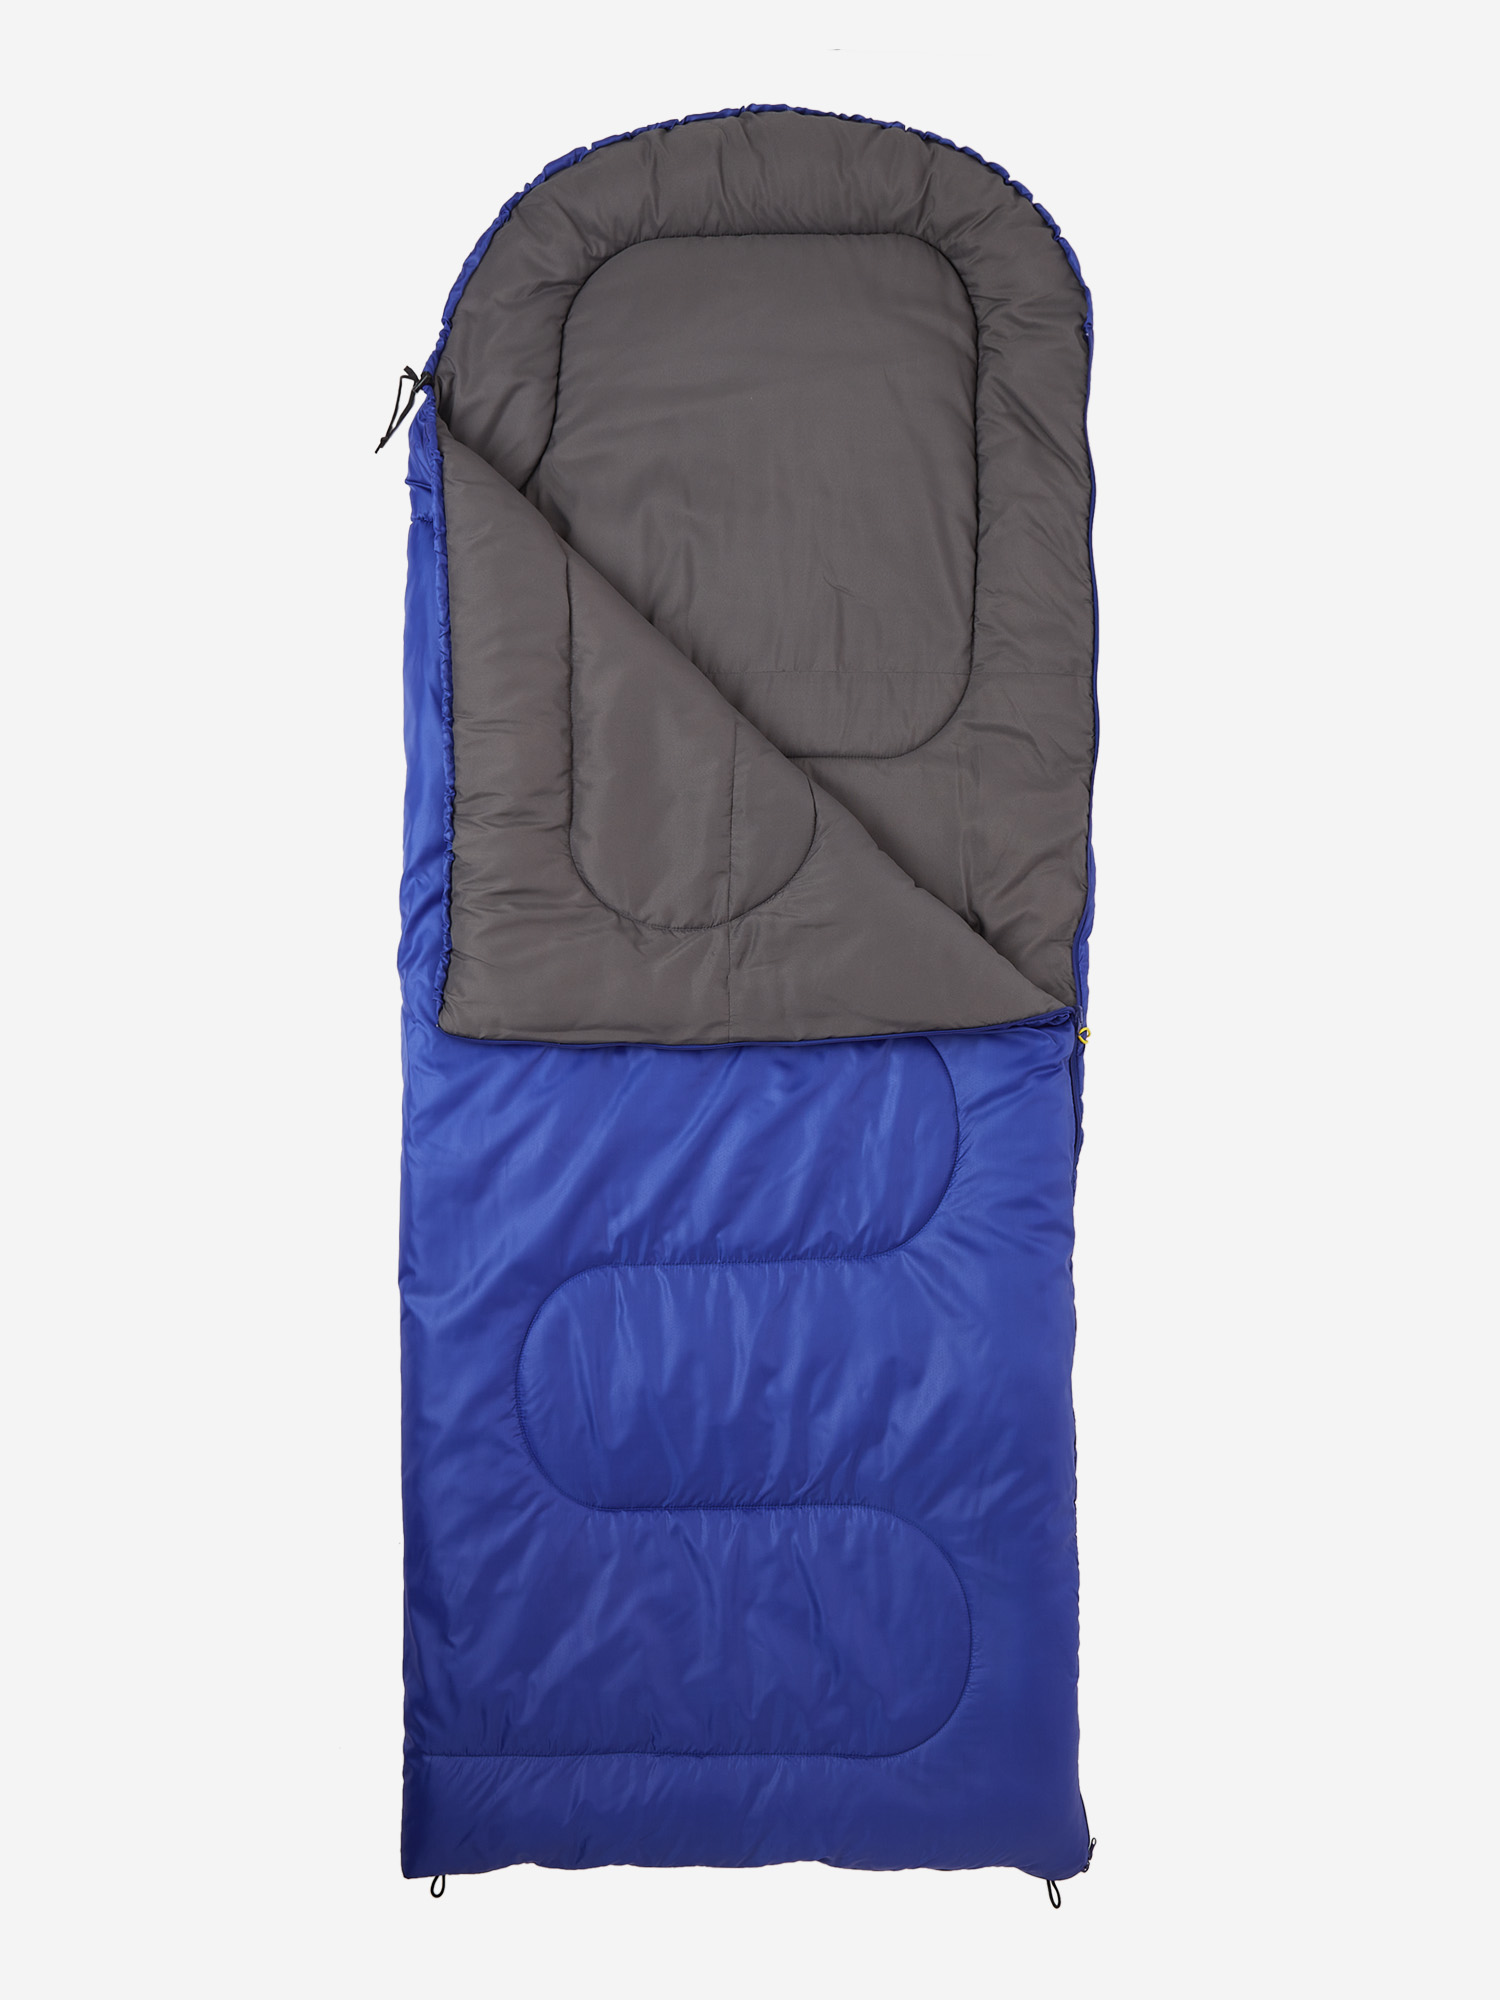 Спальный мешок Outventure Toronto +10 левосторонний, Синий спальный мешок outventure oregon t 15 синий